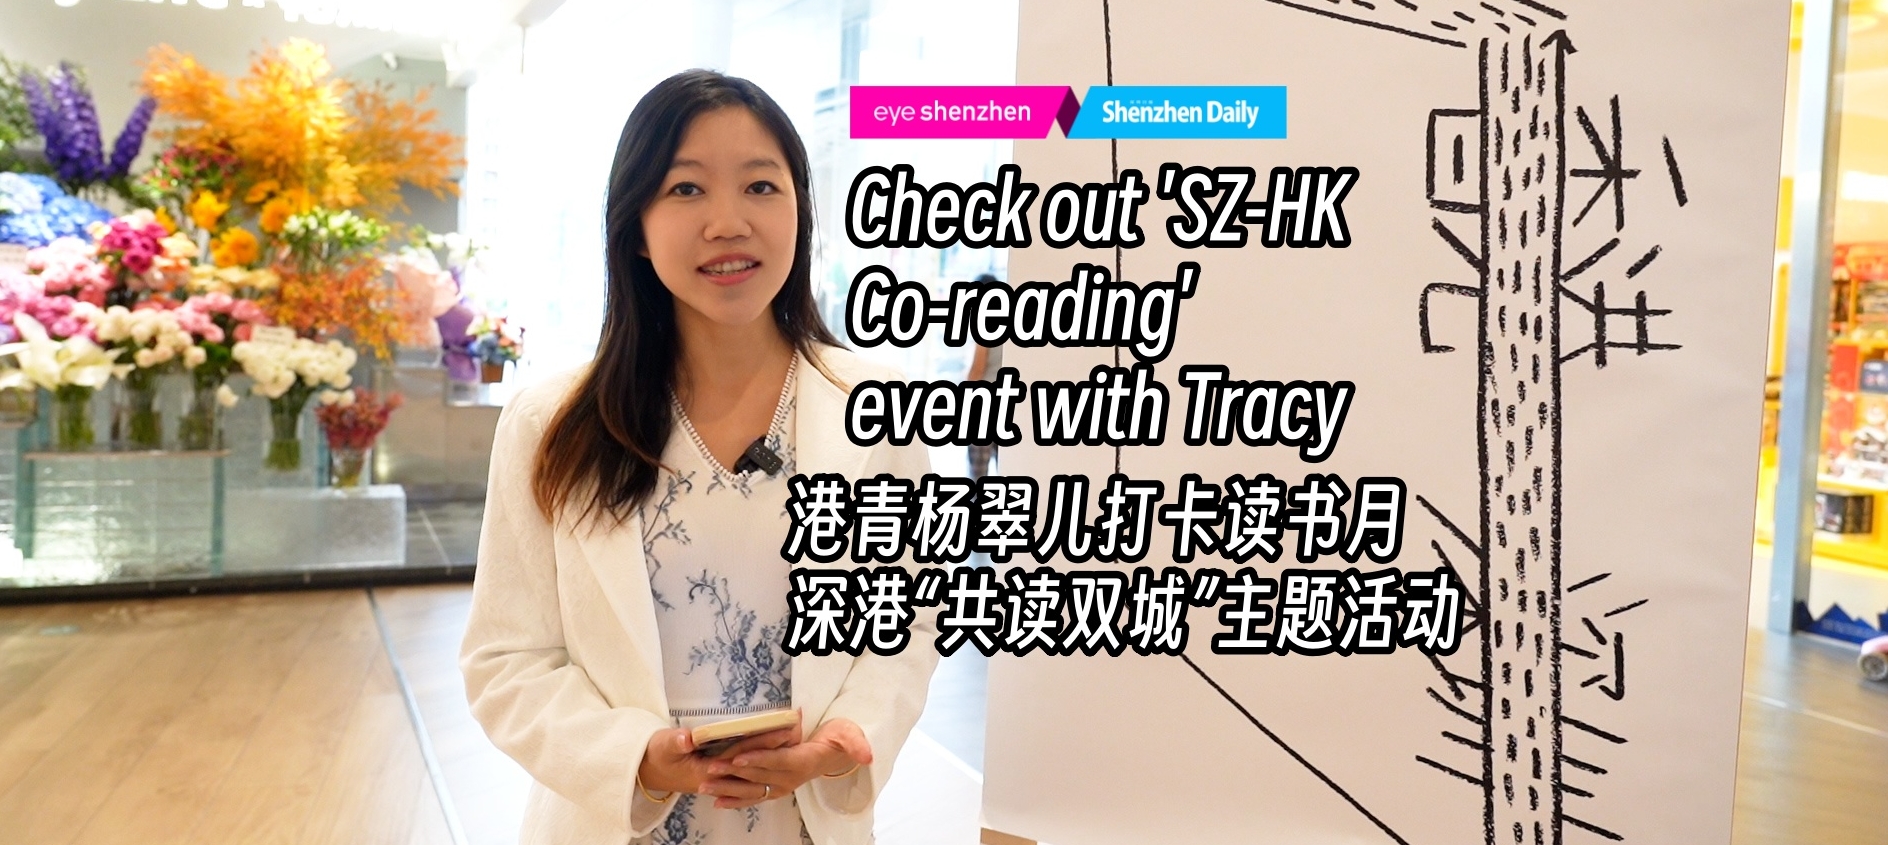 Посетите мероприятие «Совместное чтение в Шэньчжэне и Гонконге» вместе с Трейси